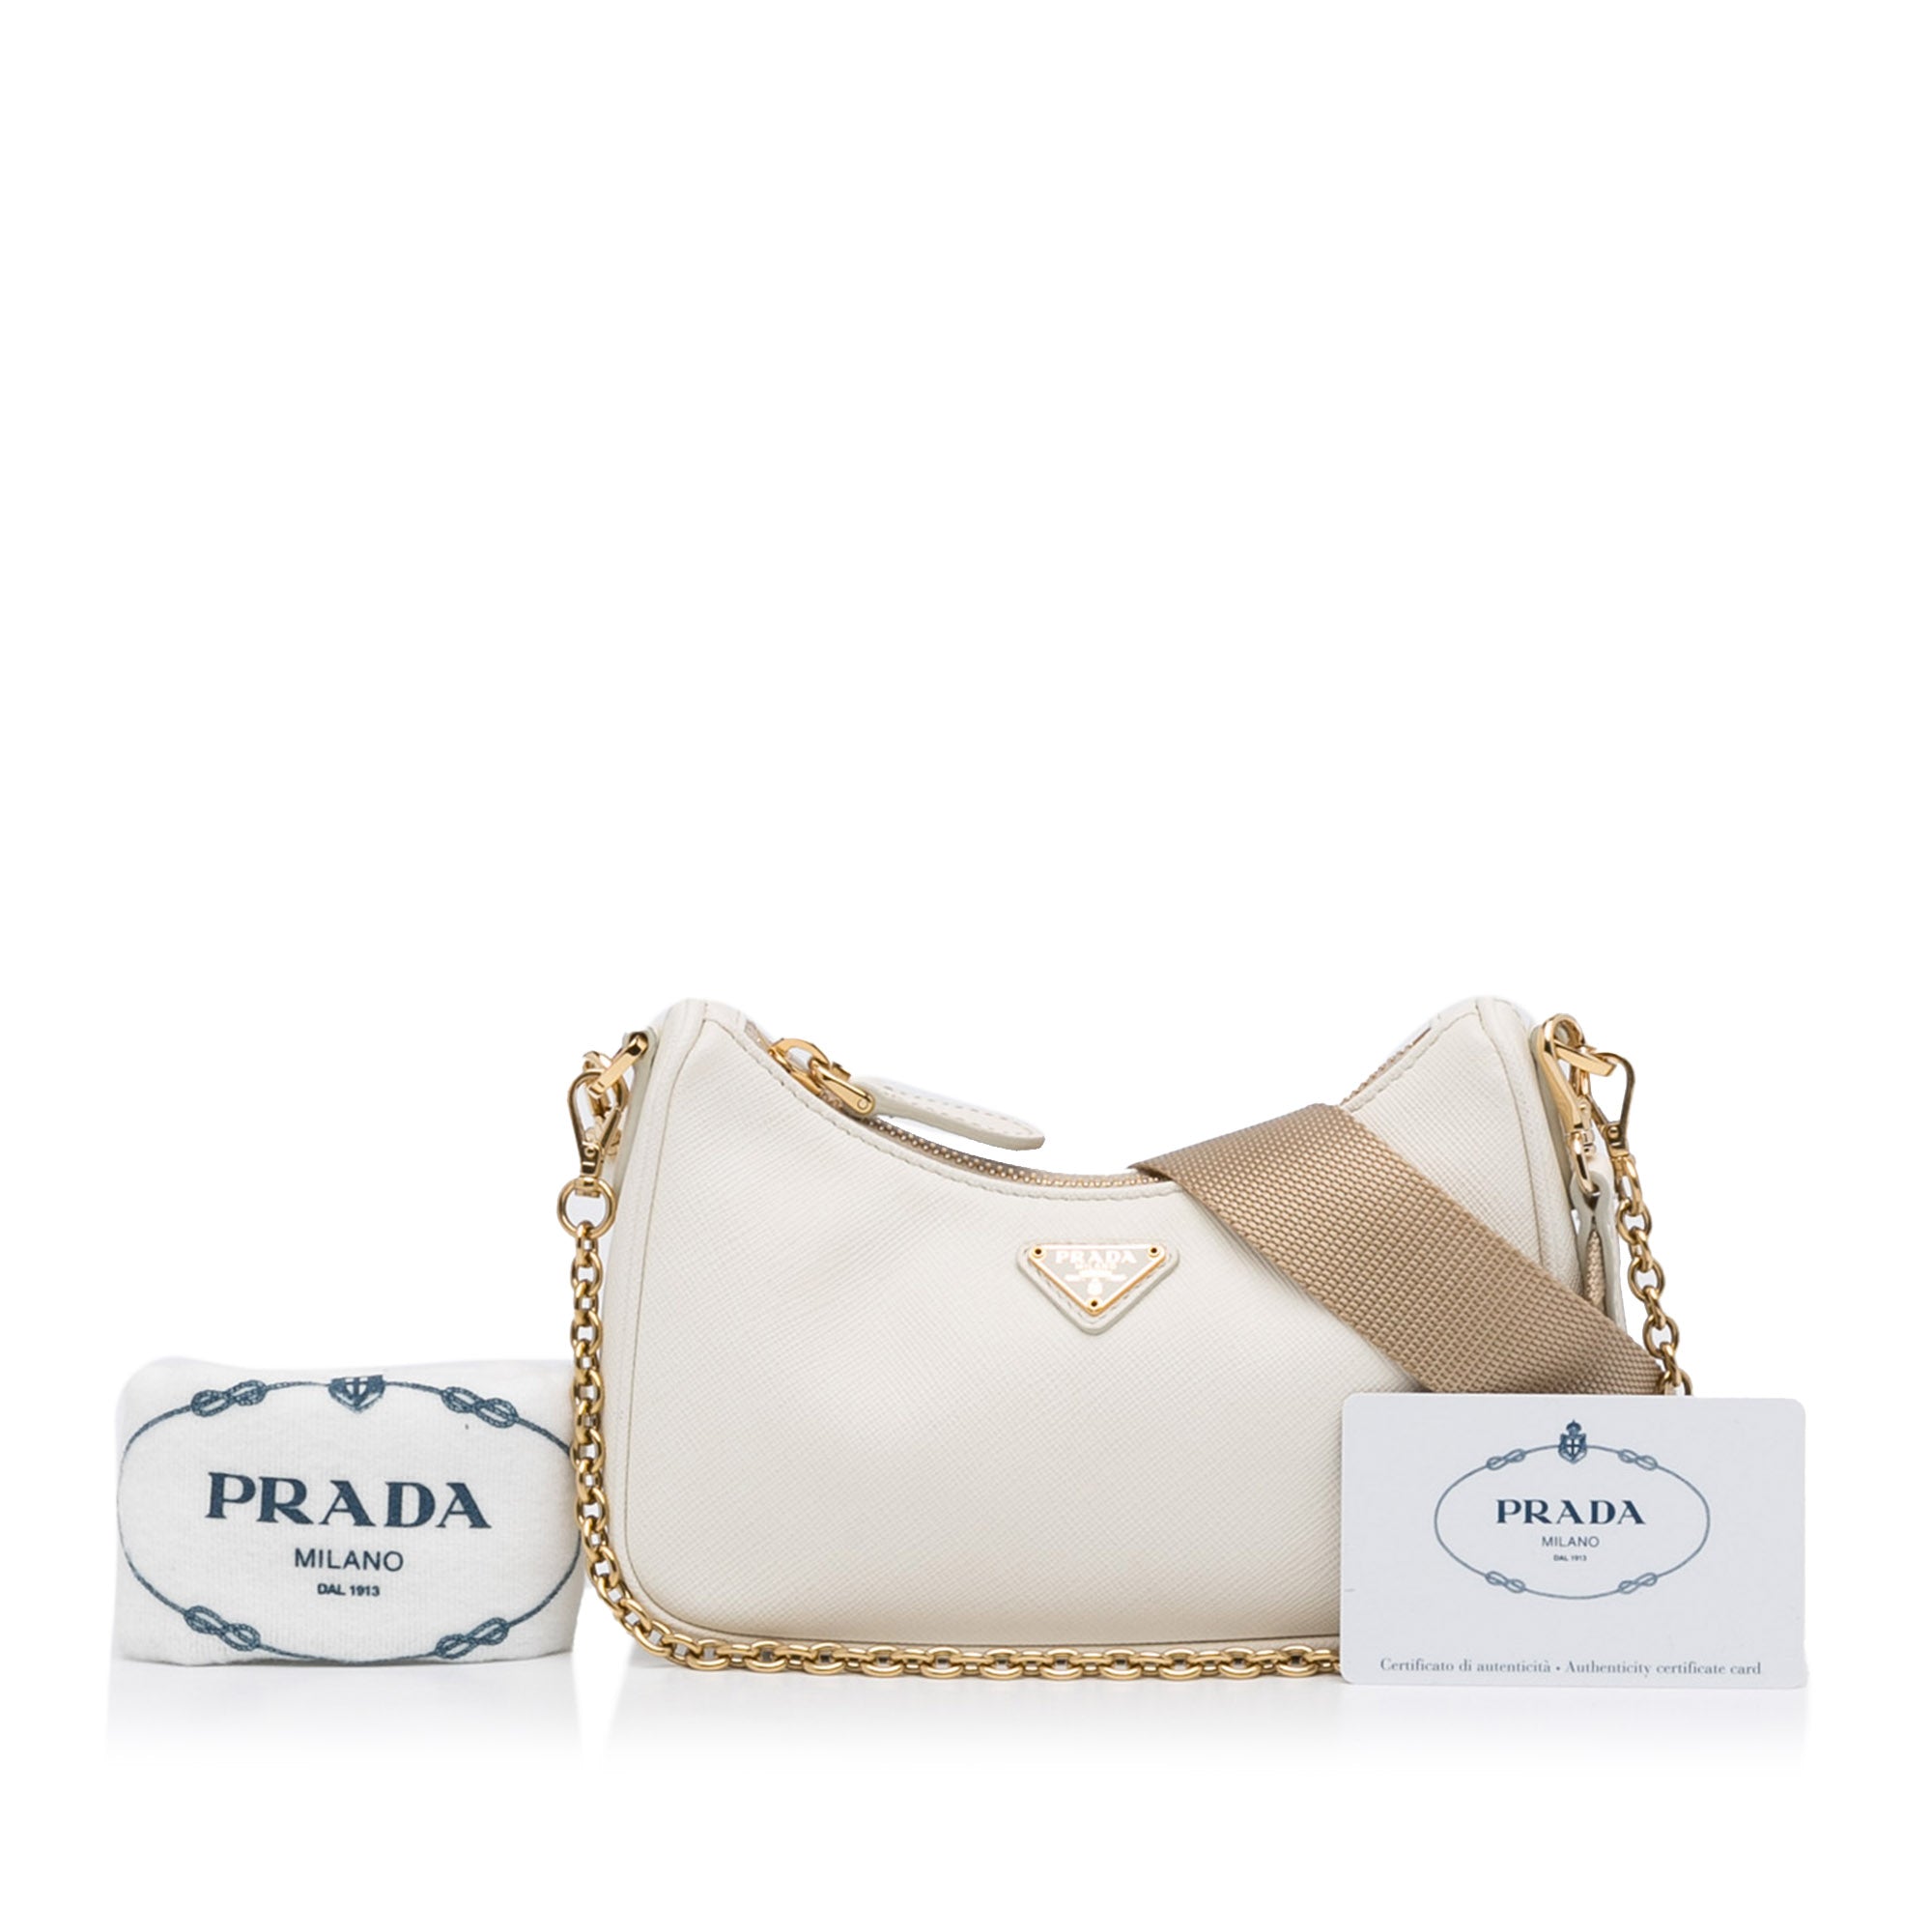 Prada Re-Edition 2005 Saffiano Leather Bag White in Saffiano